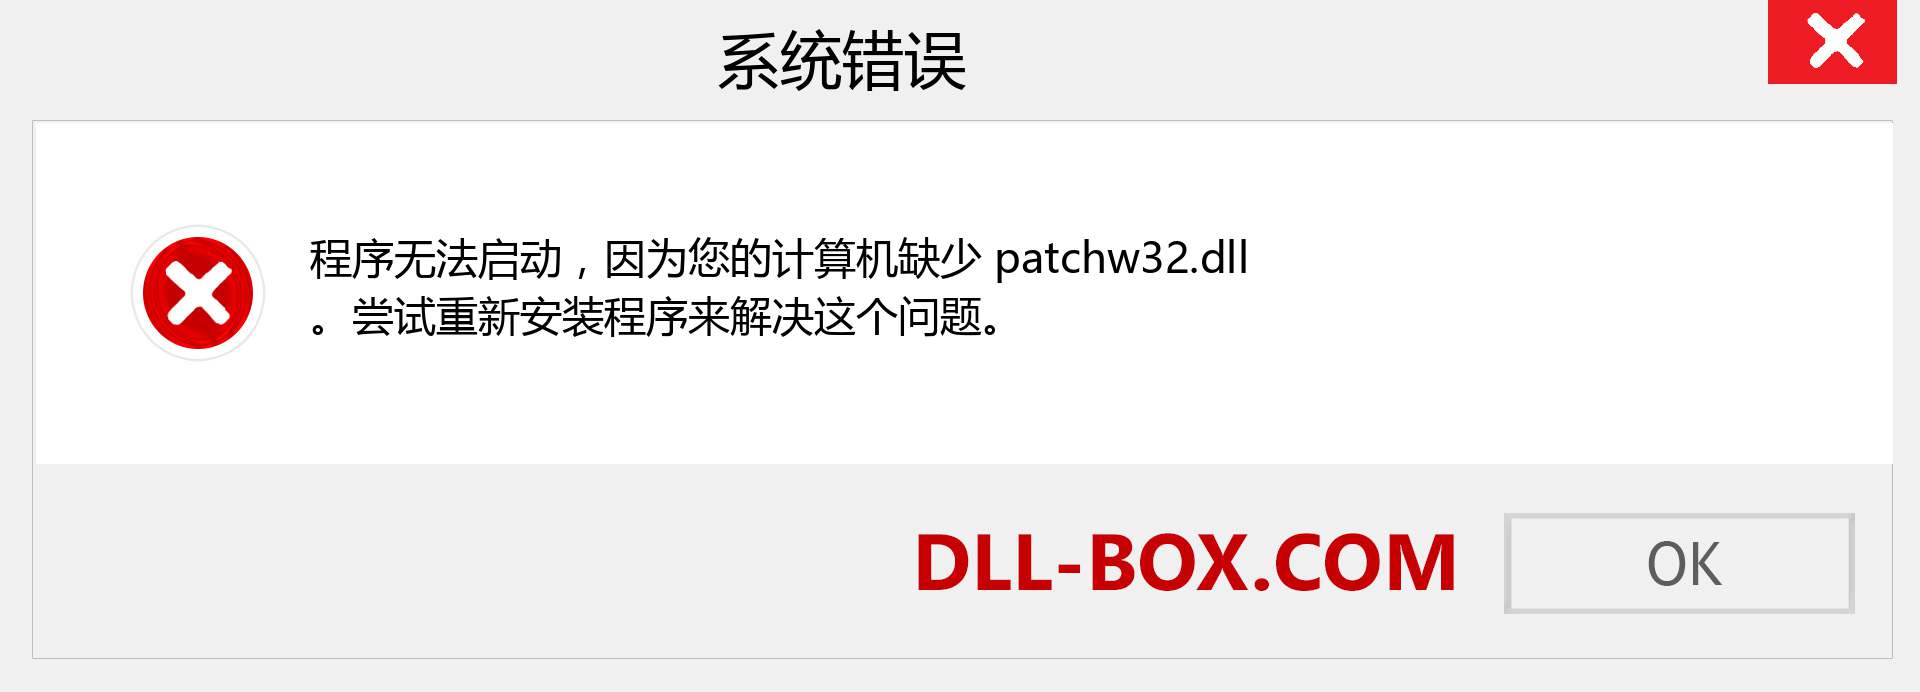 patchw32.dll 文件丢失？。 适用于 Windows 7、8、10 的下载 - 修复 Windows、照片、图像上的 patchw32 dll 丢失错误